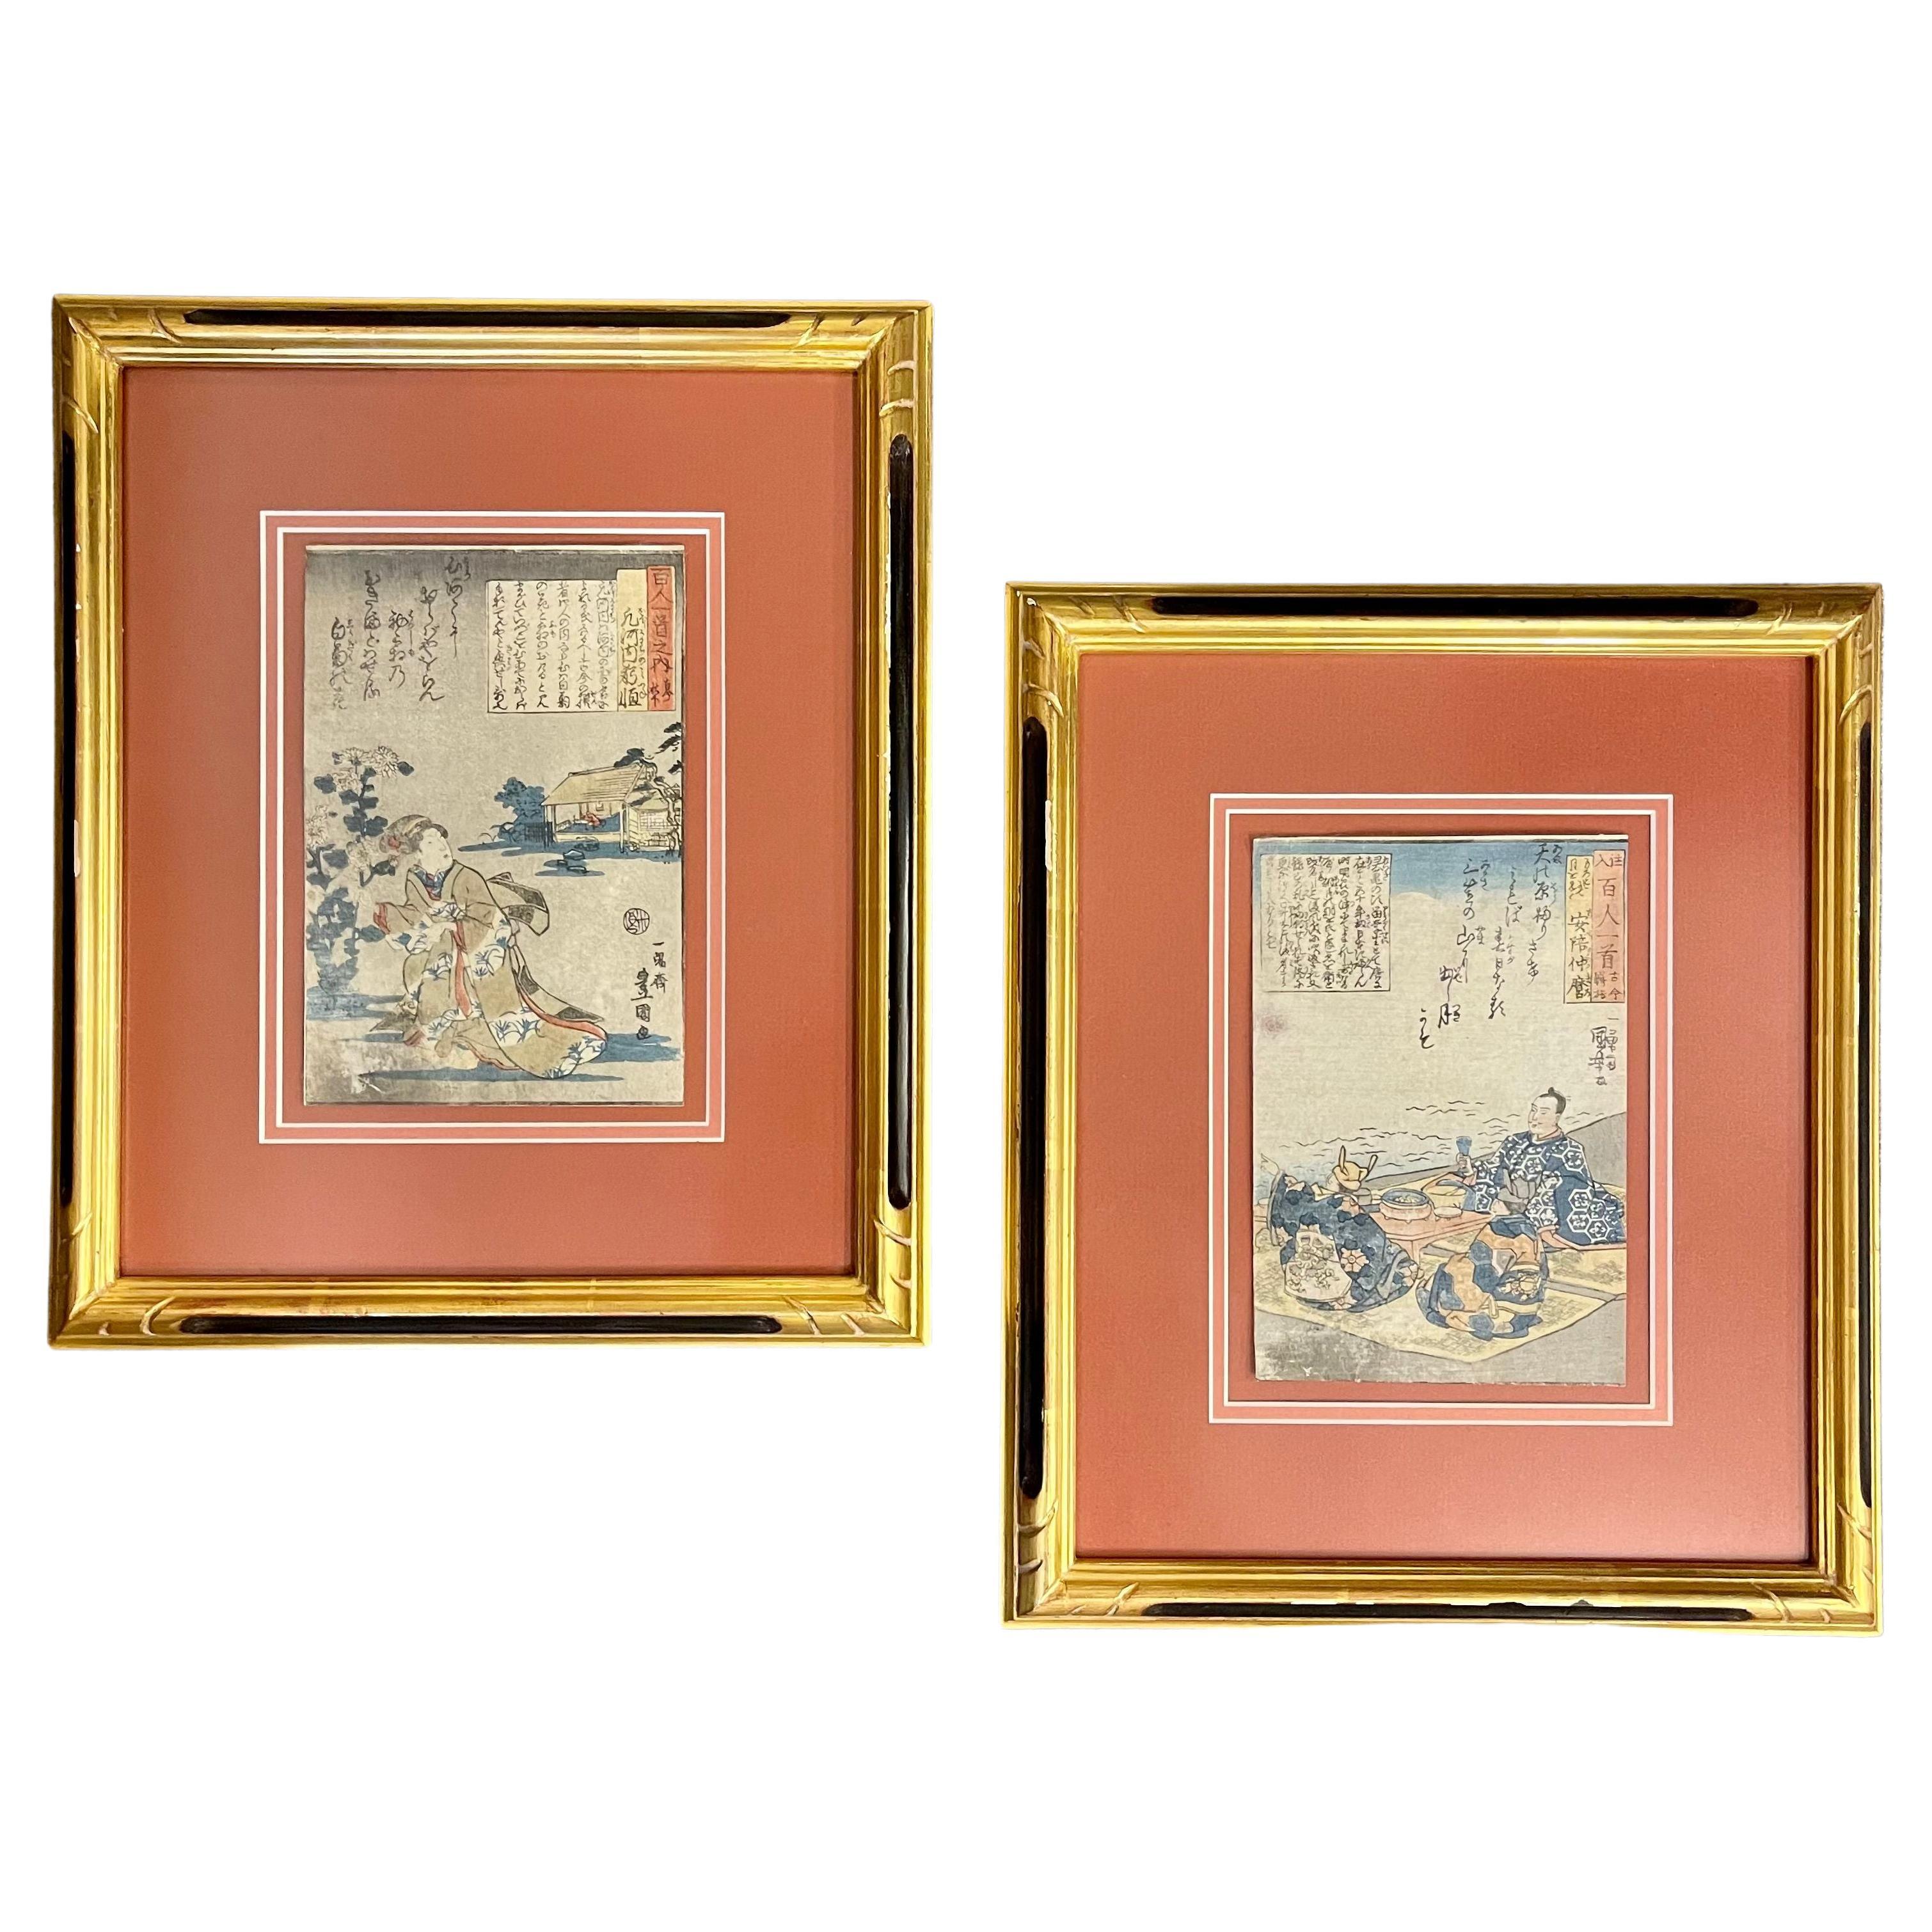 Paar japanische Holzschnitte des 19. Jahrhunderts von Utagawa Kuniyoshi in maßgefertigten Rahmen